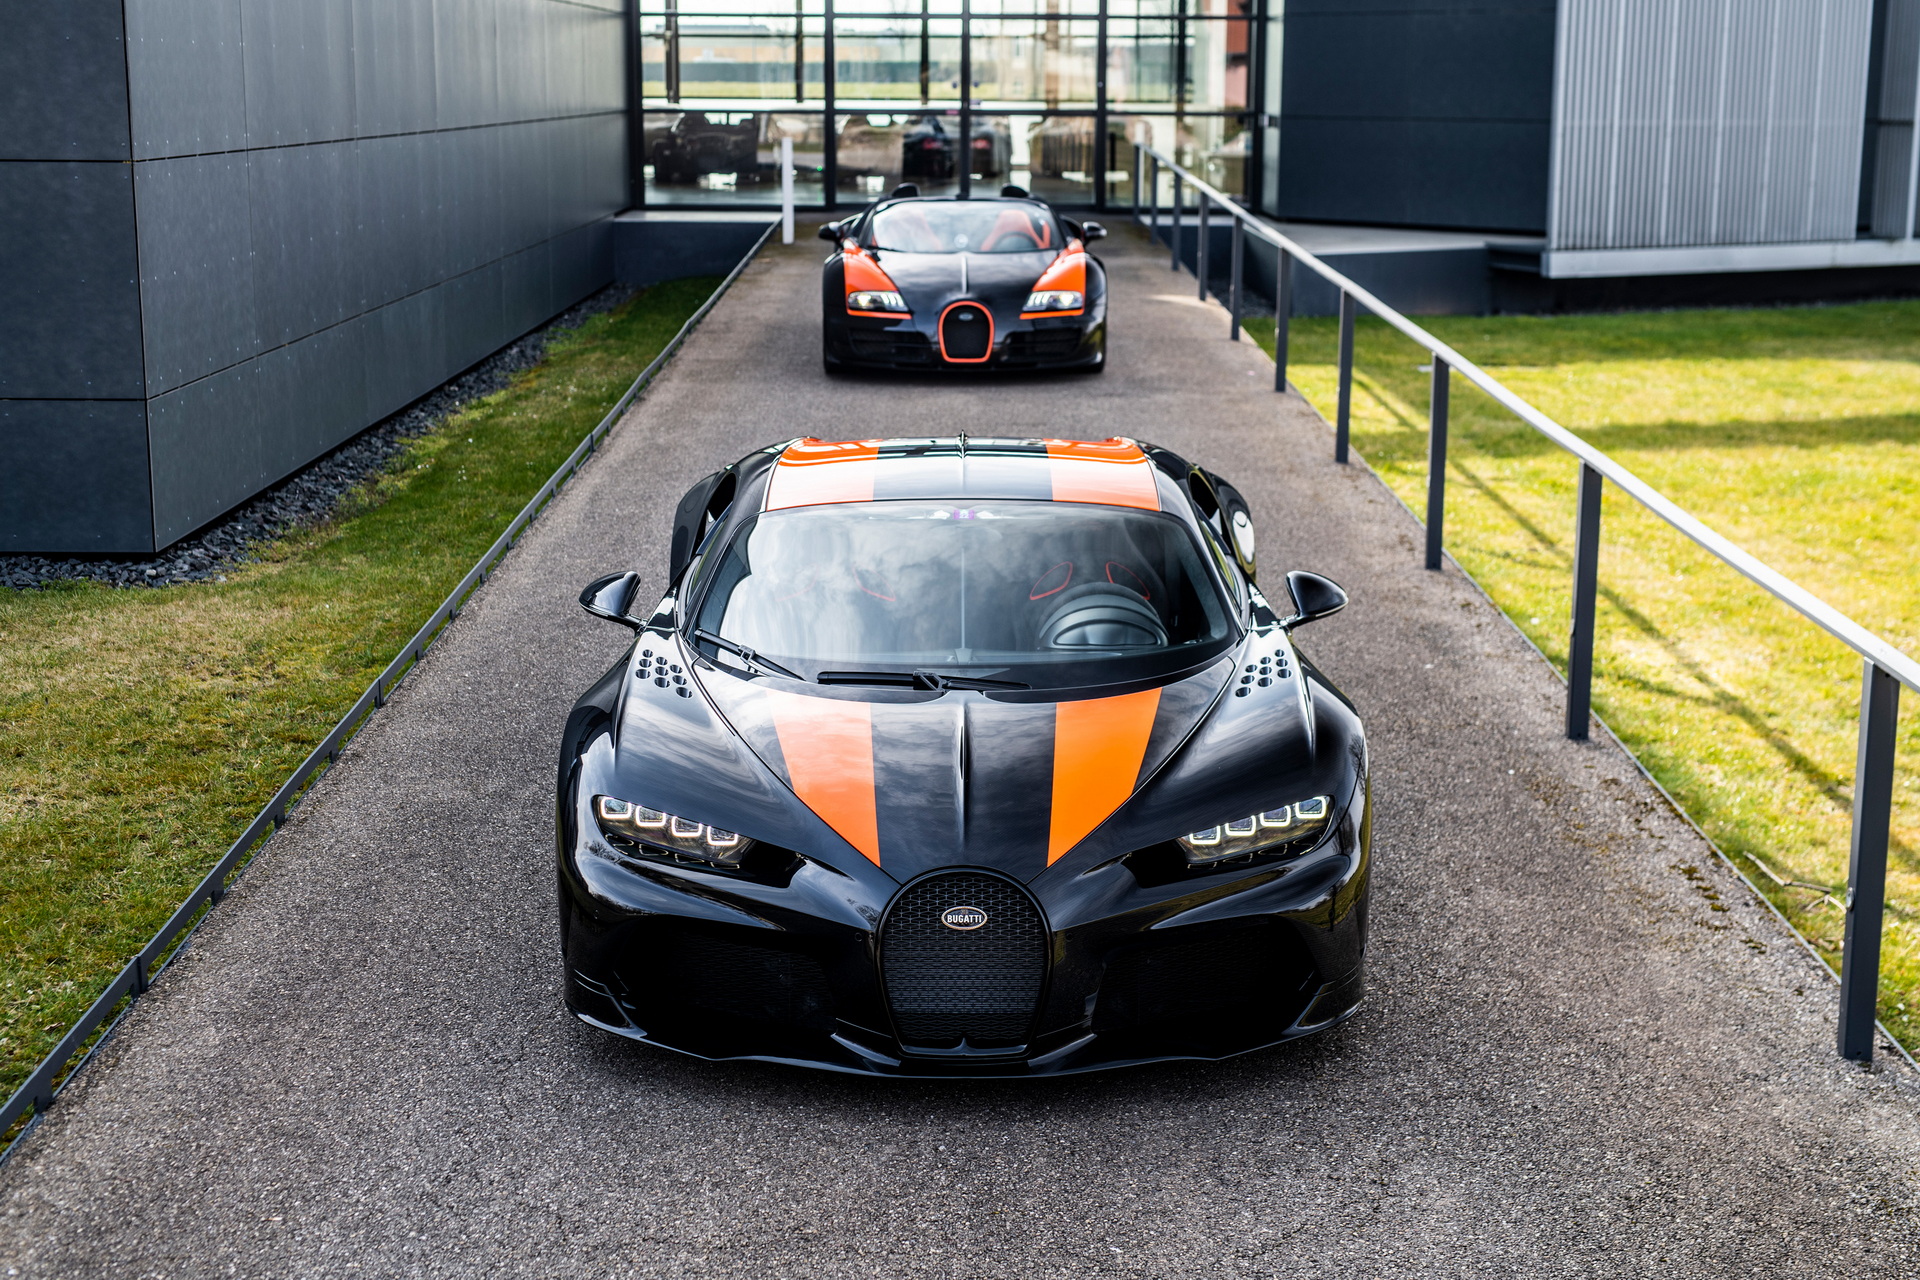 Ghé thăm nhà máy Bugatti, đại gia bí ẩn mua luôn 8 chiếc xe với giá quy đổi không dưới 150 tỷ đồng - Ảnh 3.